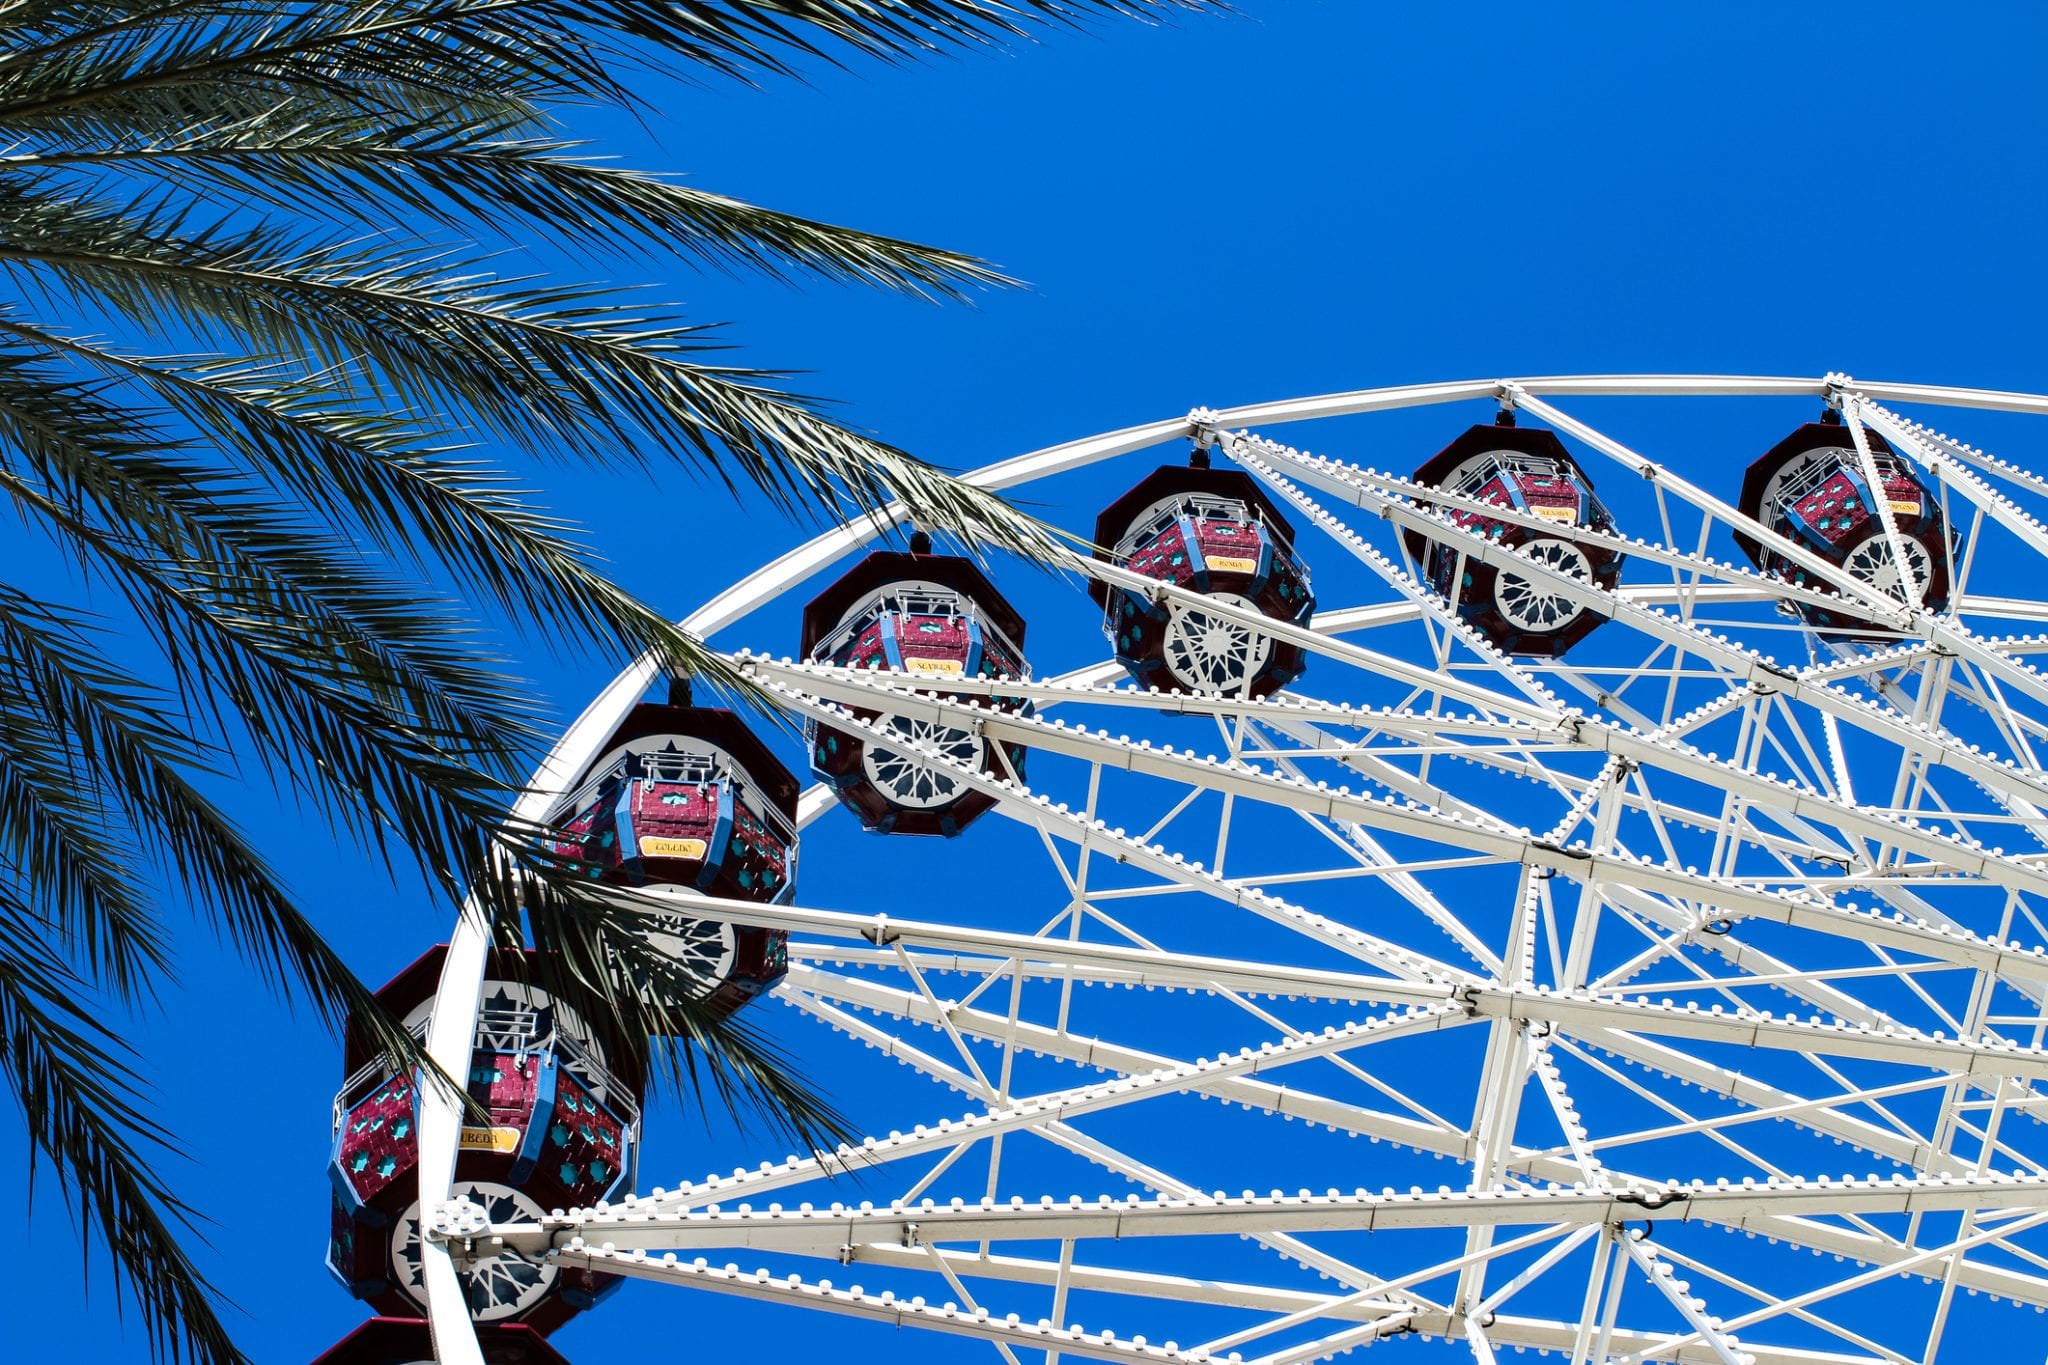 Ferris wheel near our Spectrum virtual office location at Irvine Spectrum, California